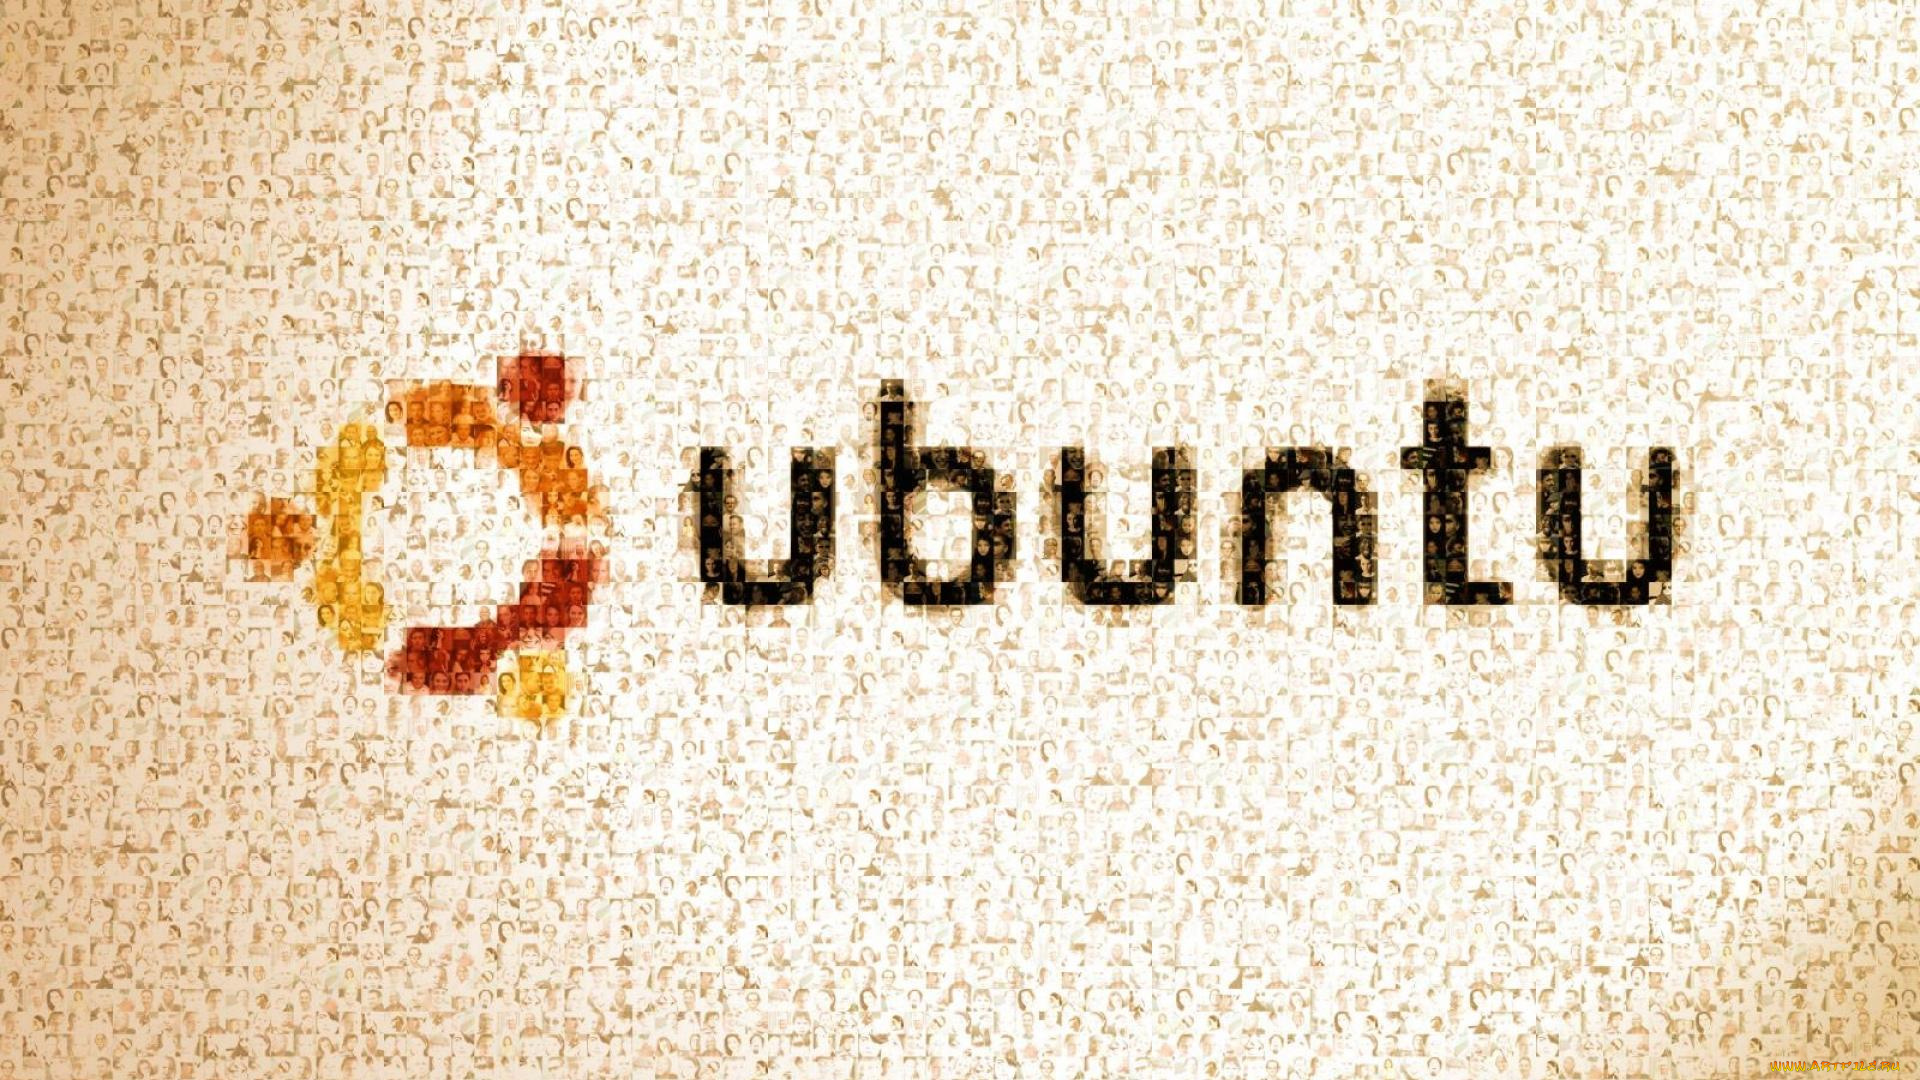 компьютеры, ubuntu, linux, логотип